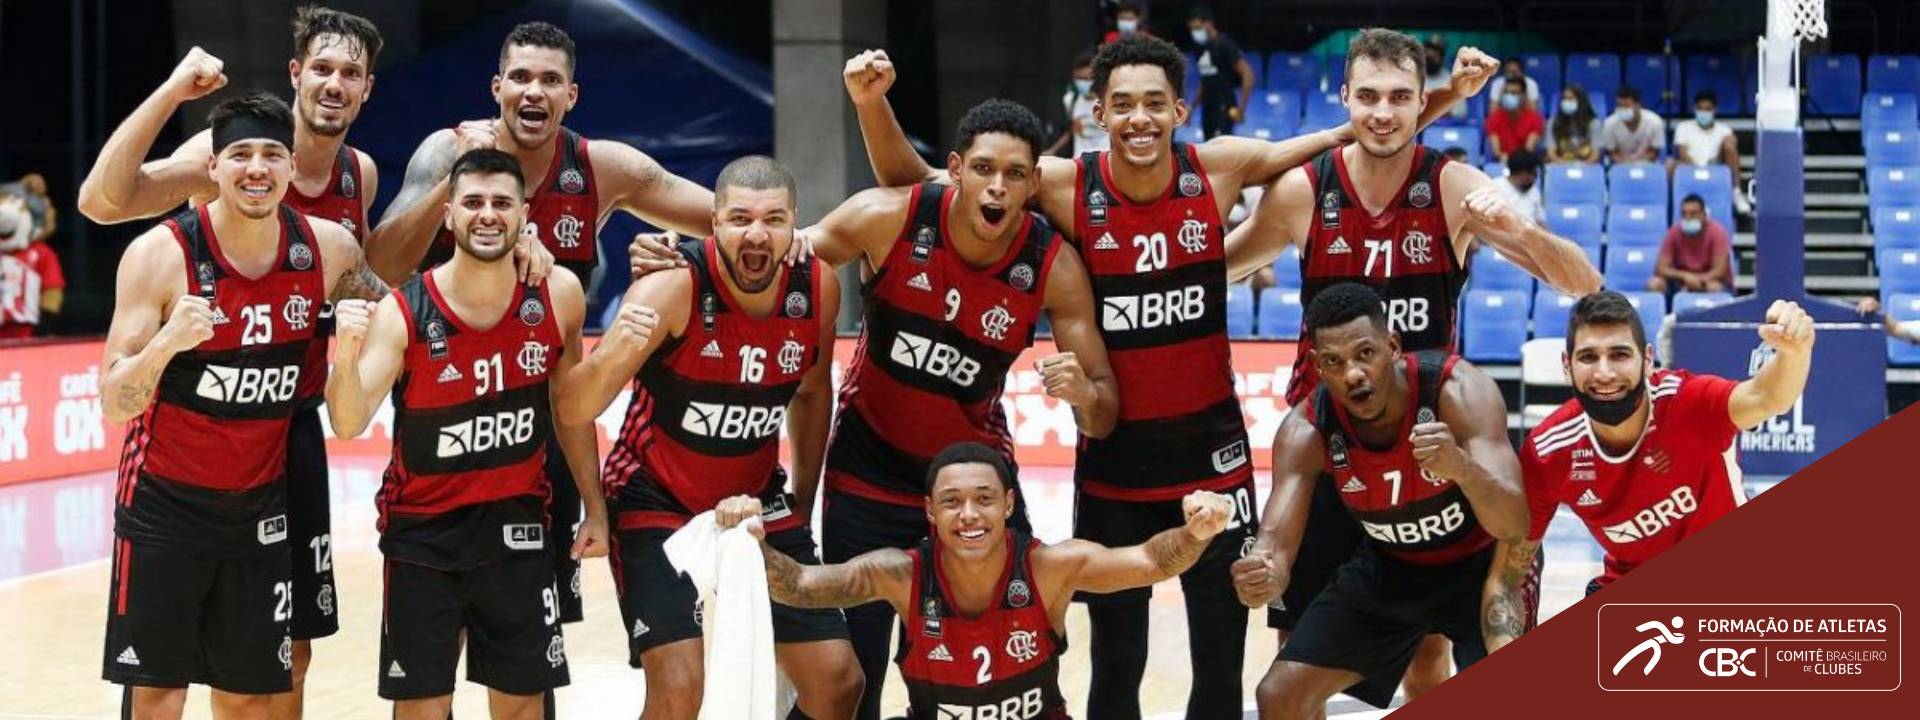 Flamengo Basquete, clube filiado ao CBC, conquista vaga na final da Basketball Champions League Americas (BCLA)